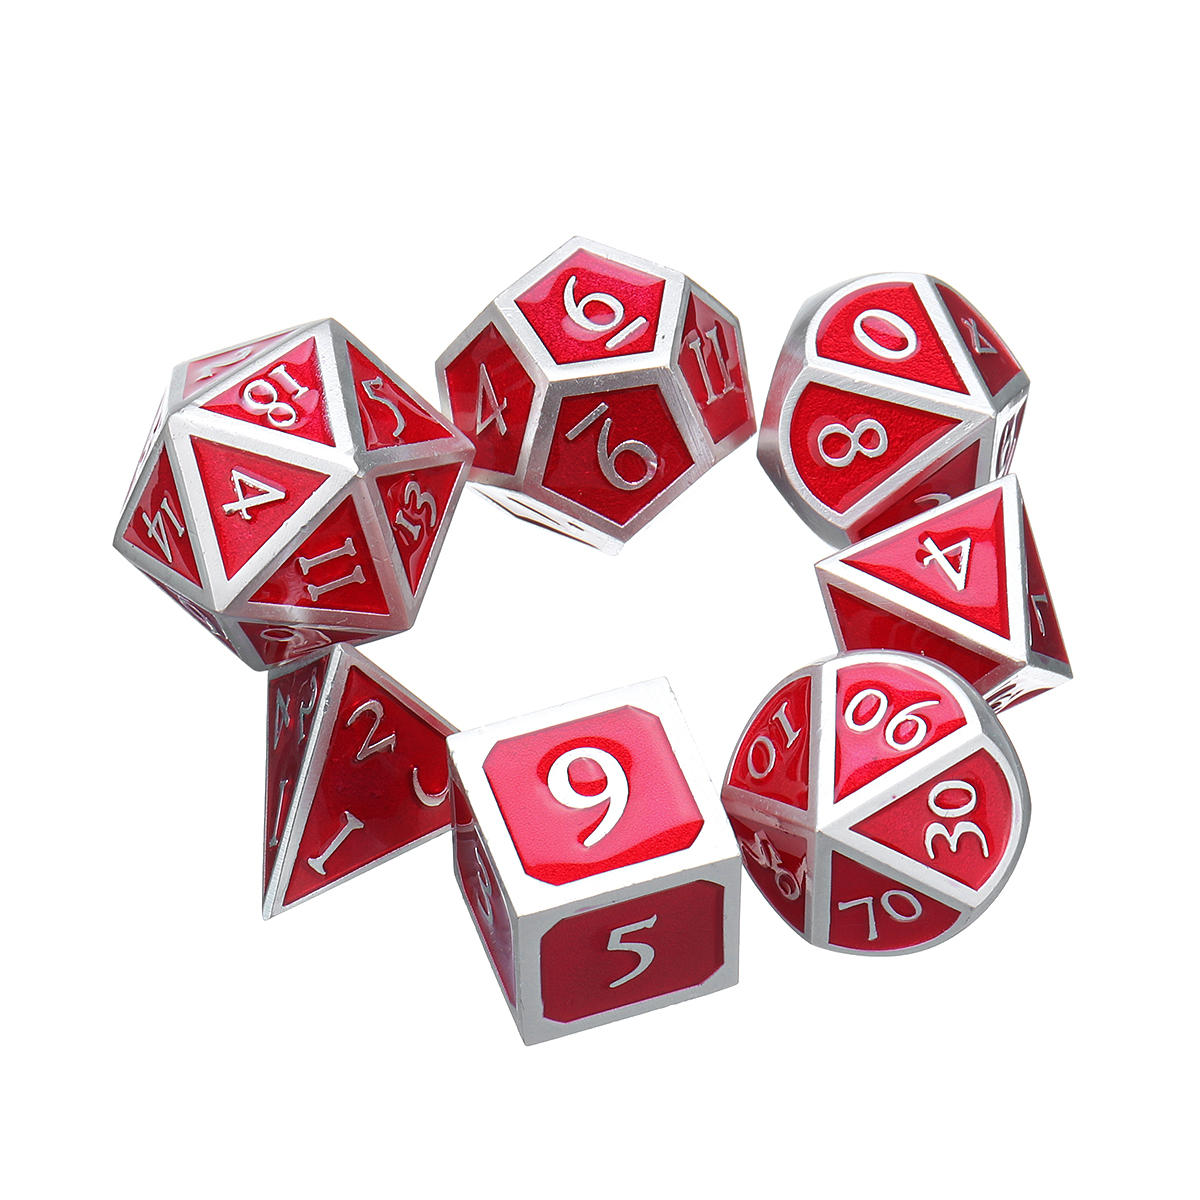 rode antieke kleur solide metalen polyhedral dobbelstenen rollenspel rpg gadget 7 dobbelstenen set met tas